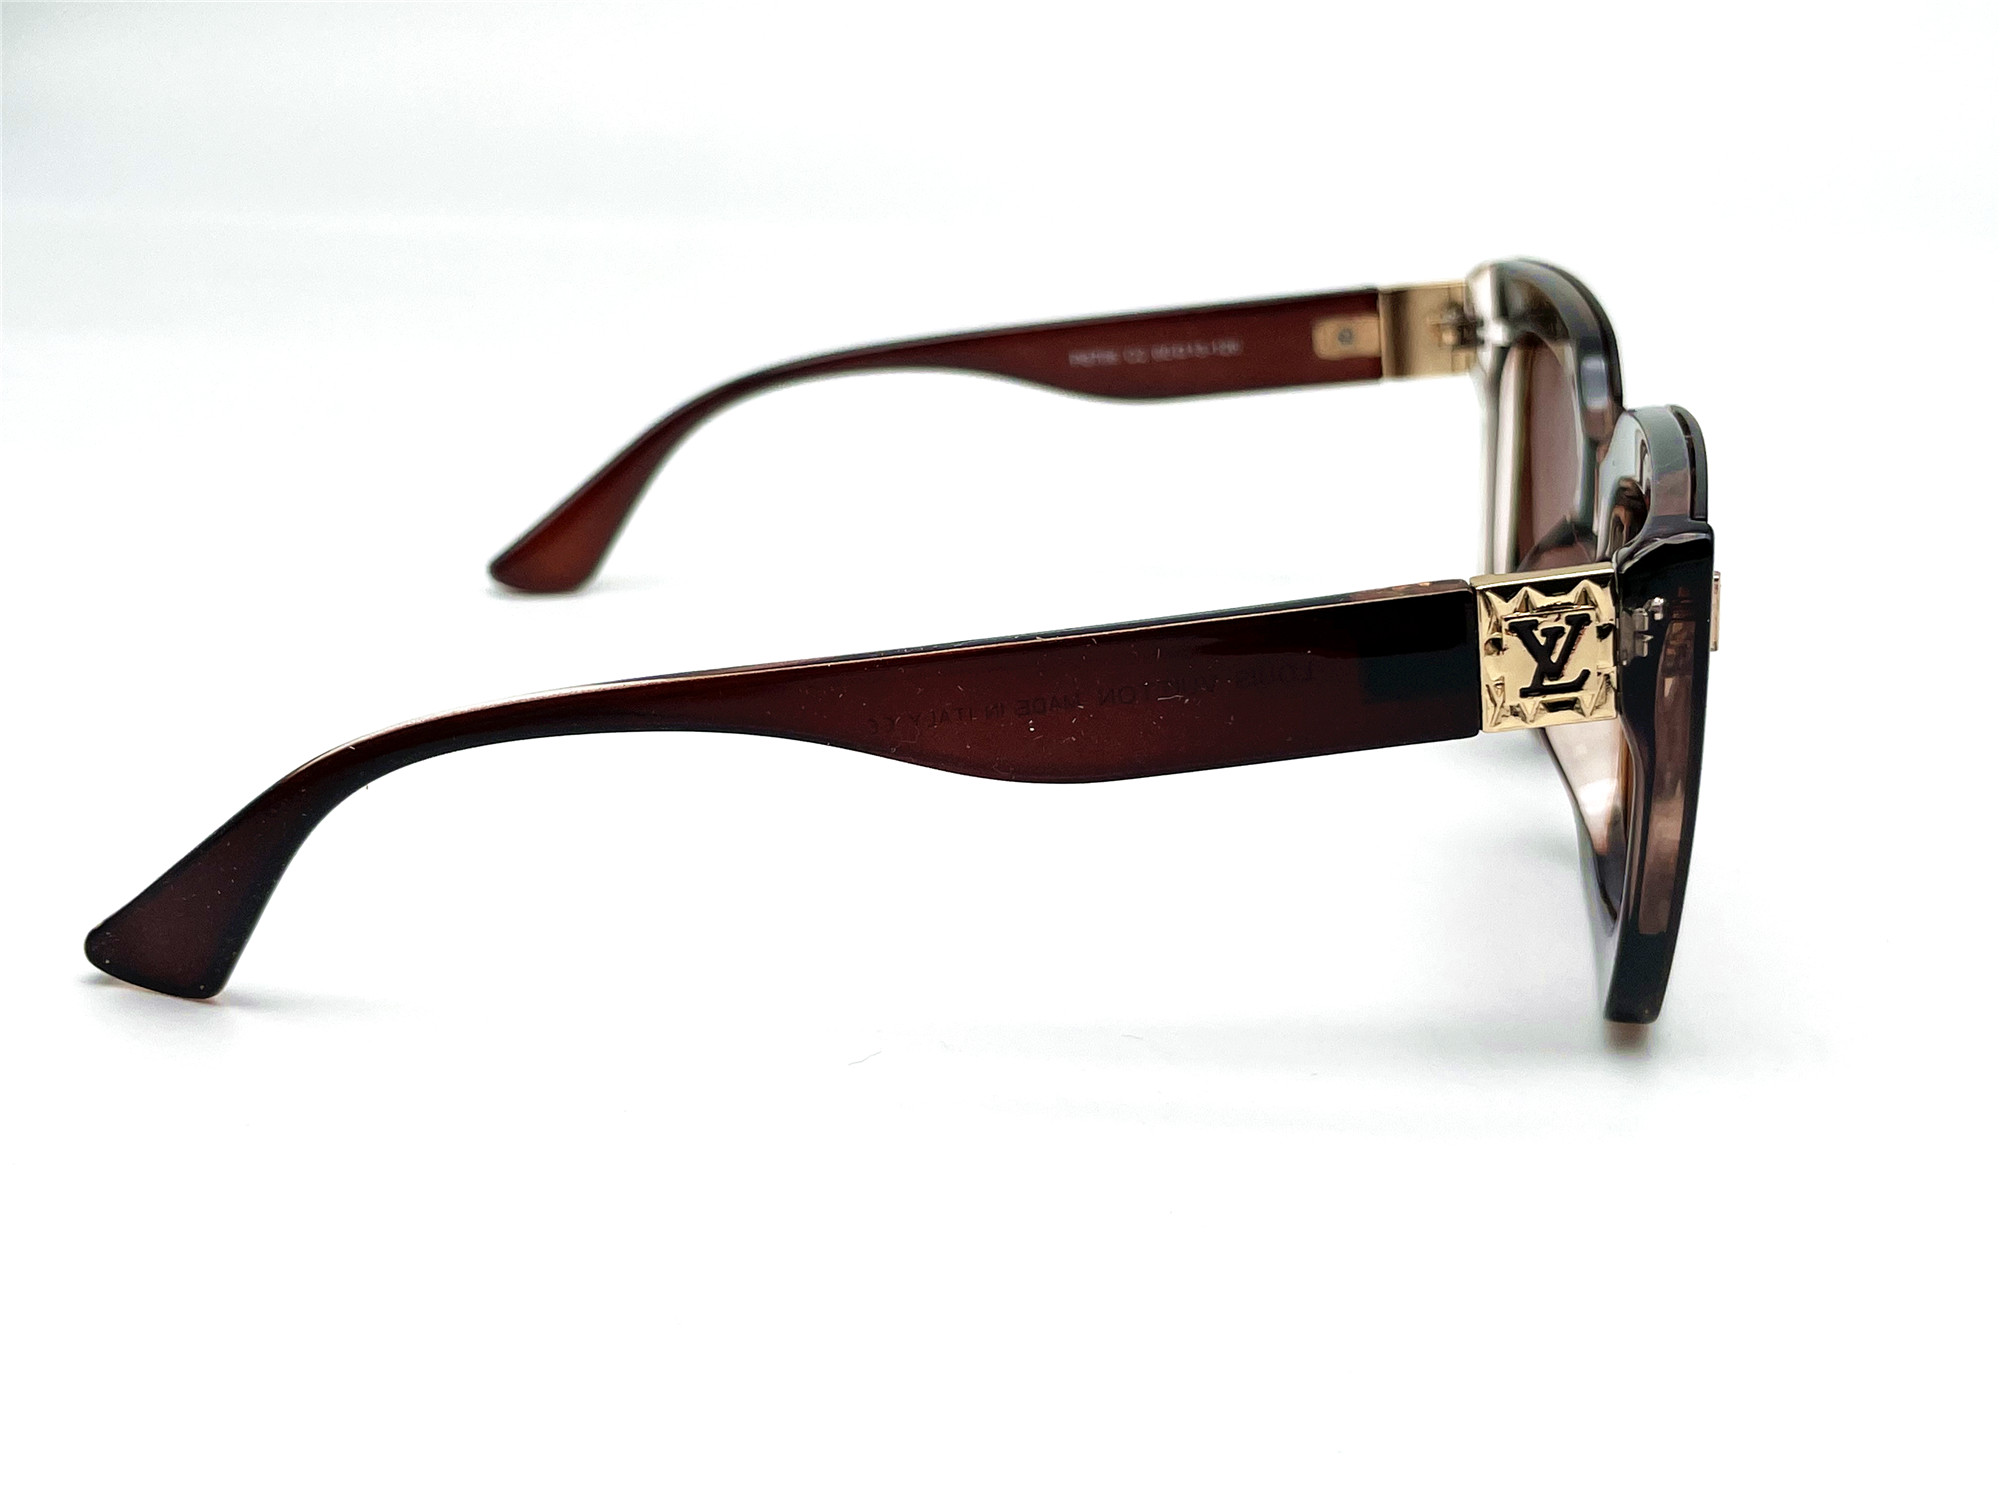  Солнцезащитные очки картинка Женские Брендовые Polarized Классический P8706-C2 